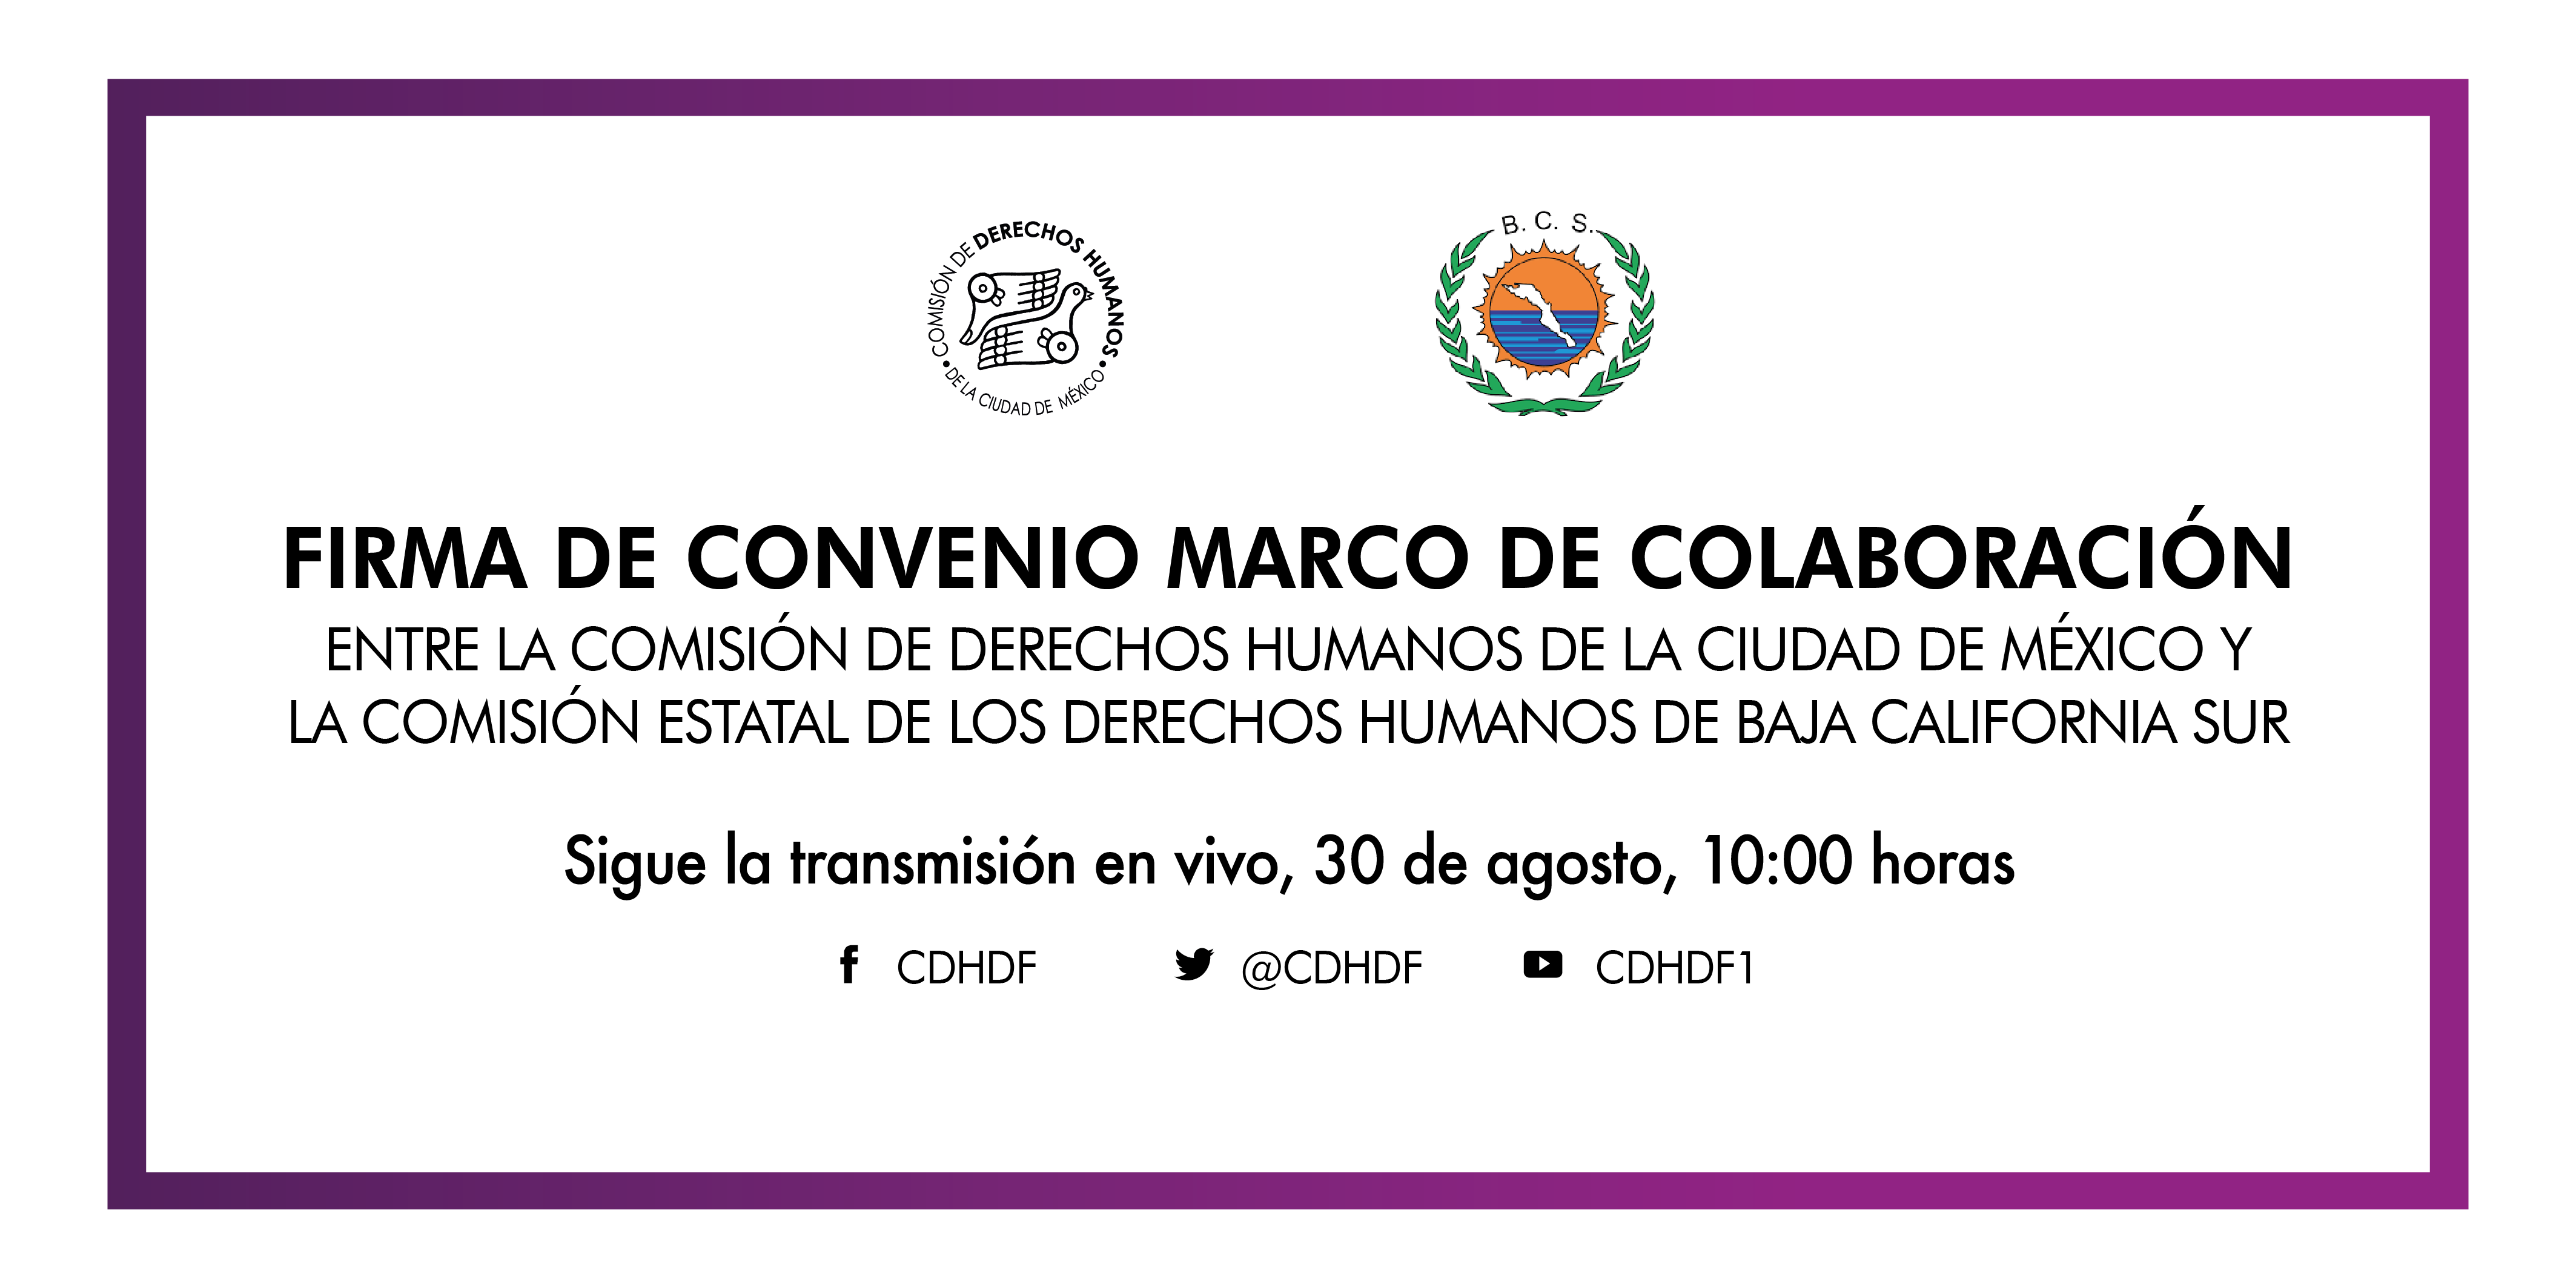 Firma de Convenio Marco de Colaboración con la Comisión Estatal de los Derechos Humanos de Baja California Sur (CEDHBCS)